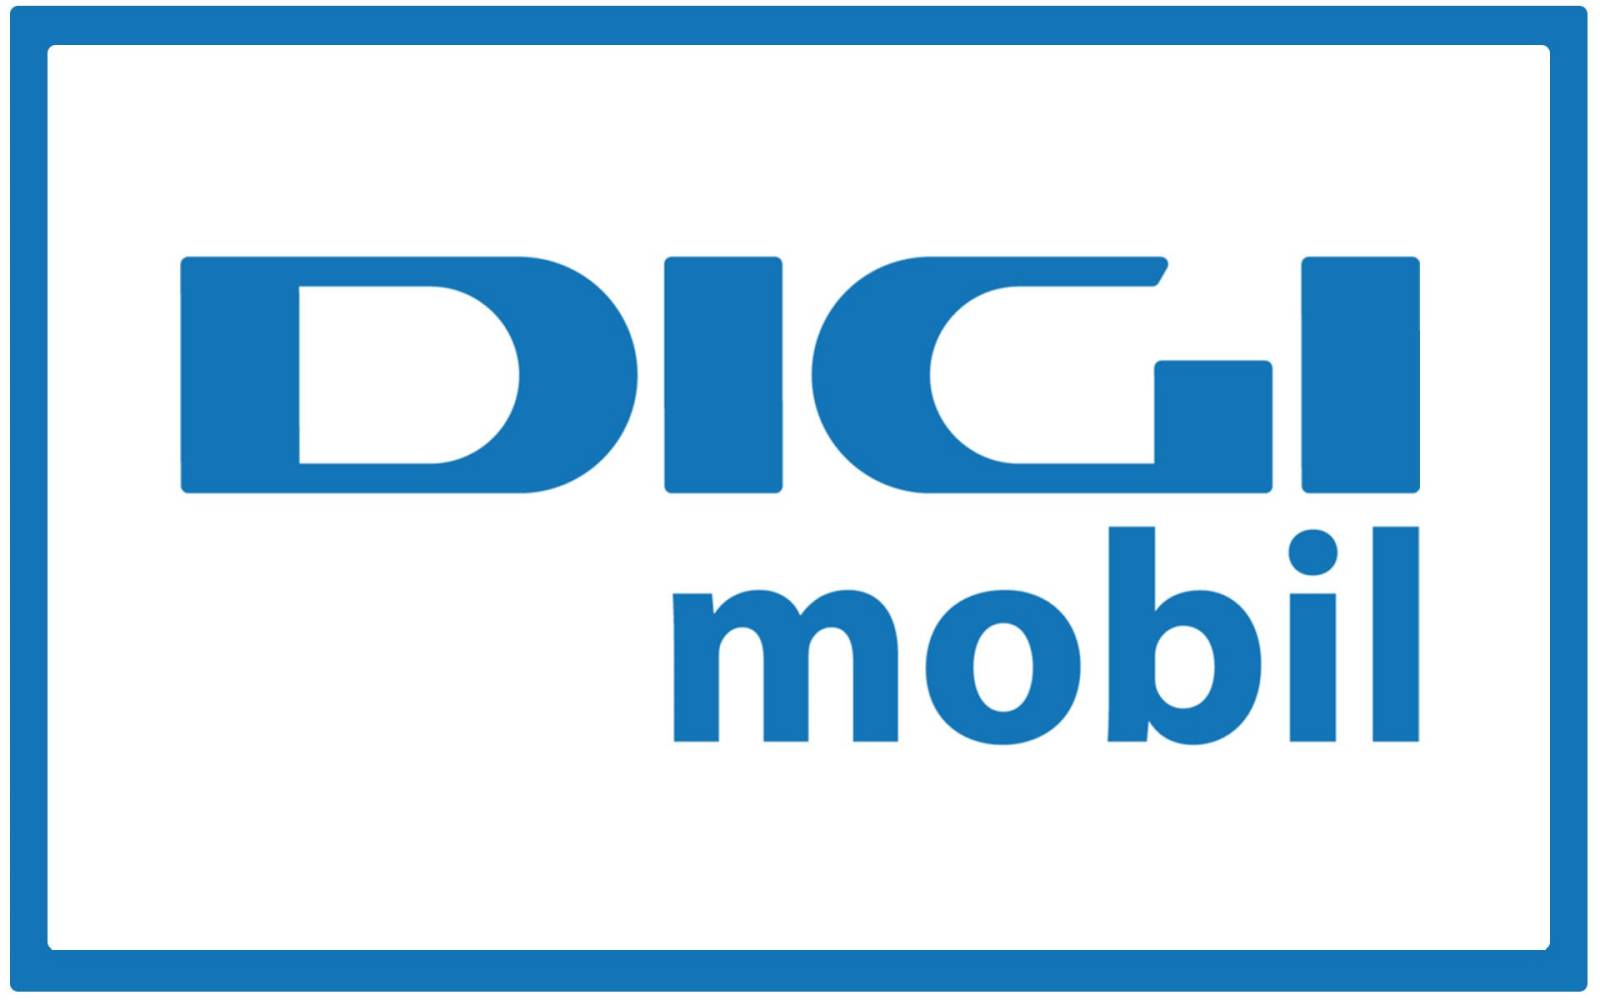 Itinérance accidentelle de Digi Mobile